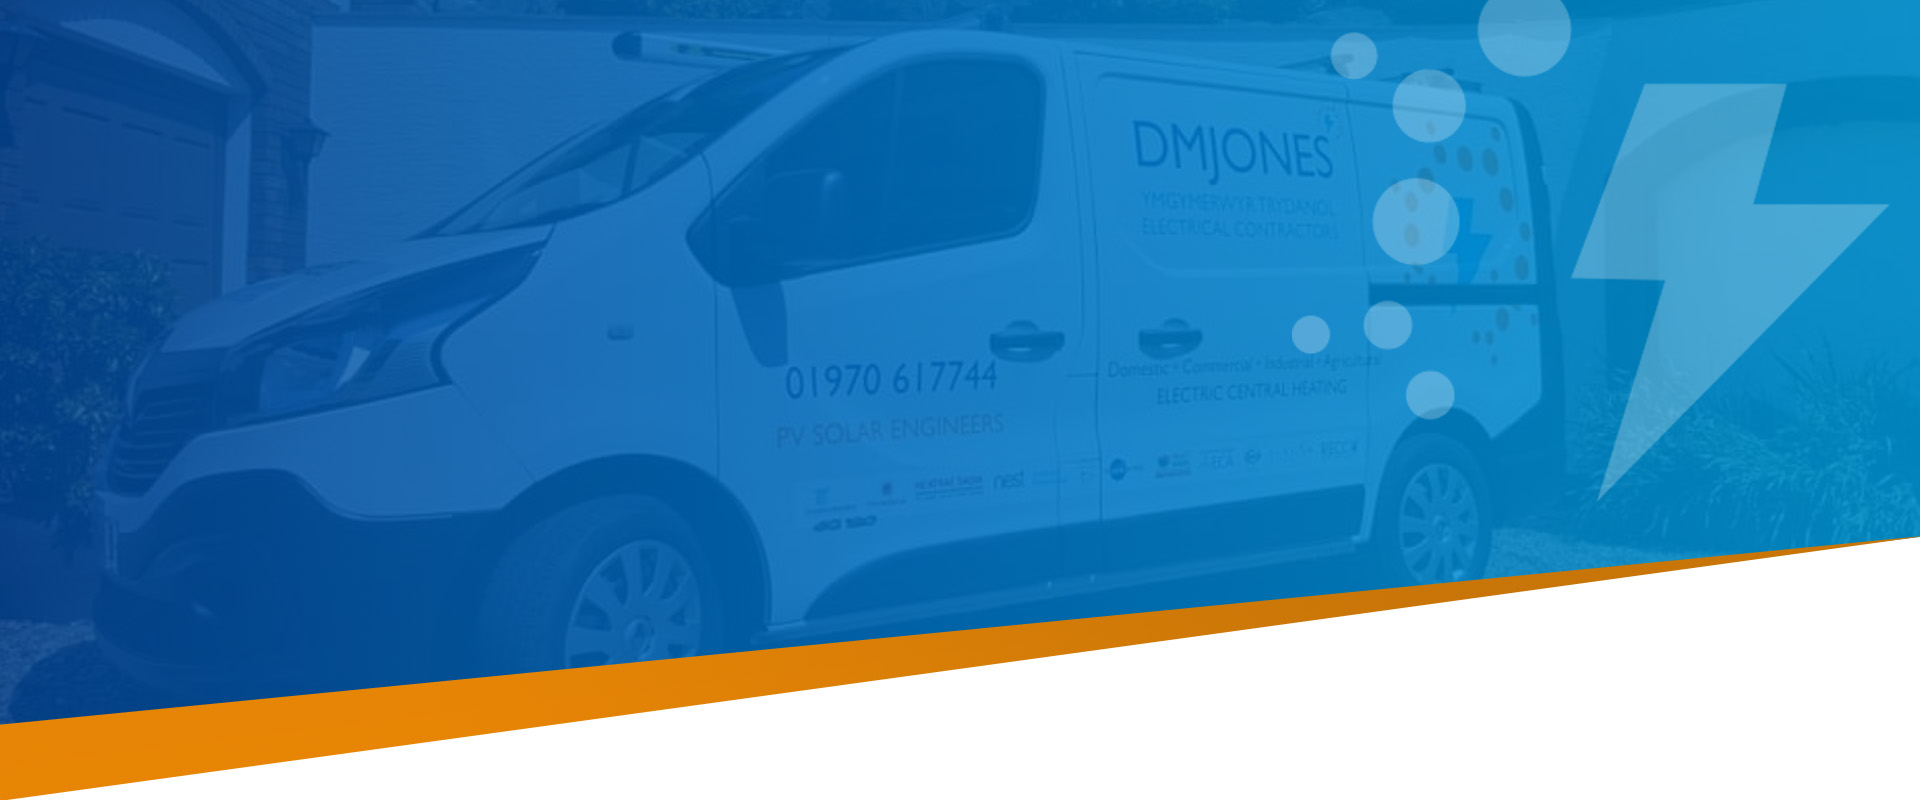 Banner image of a DM Jones van